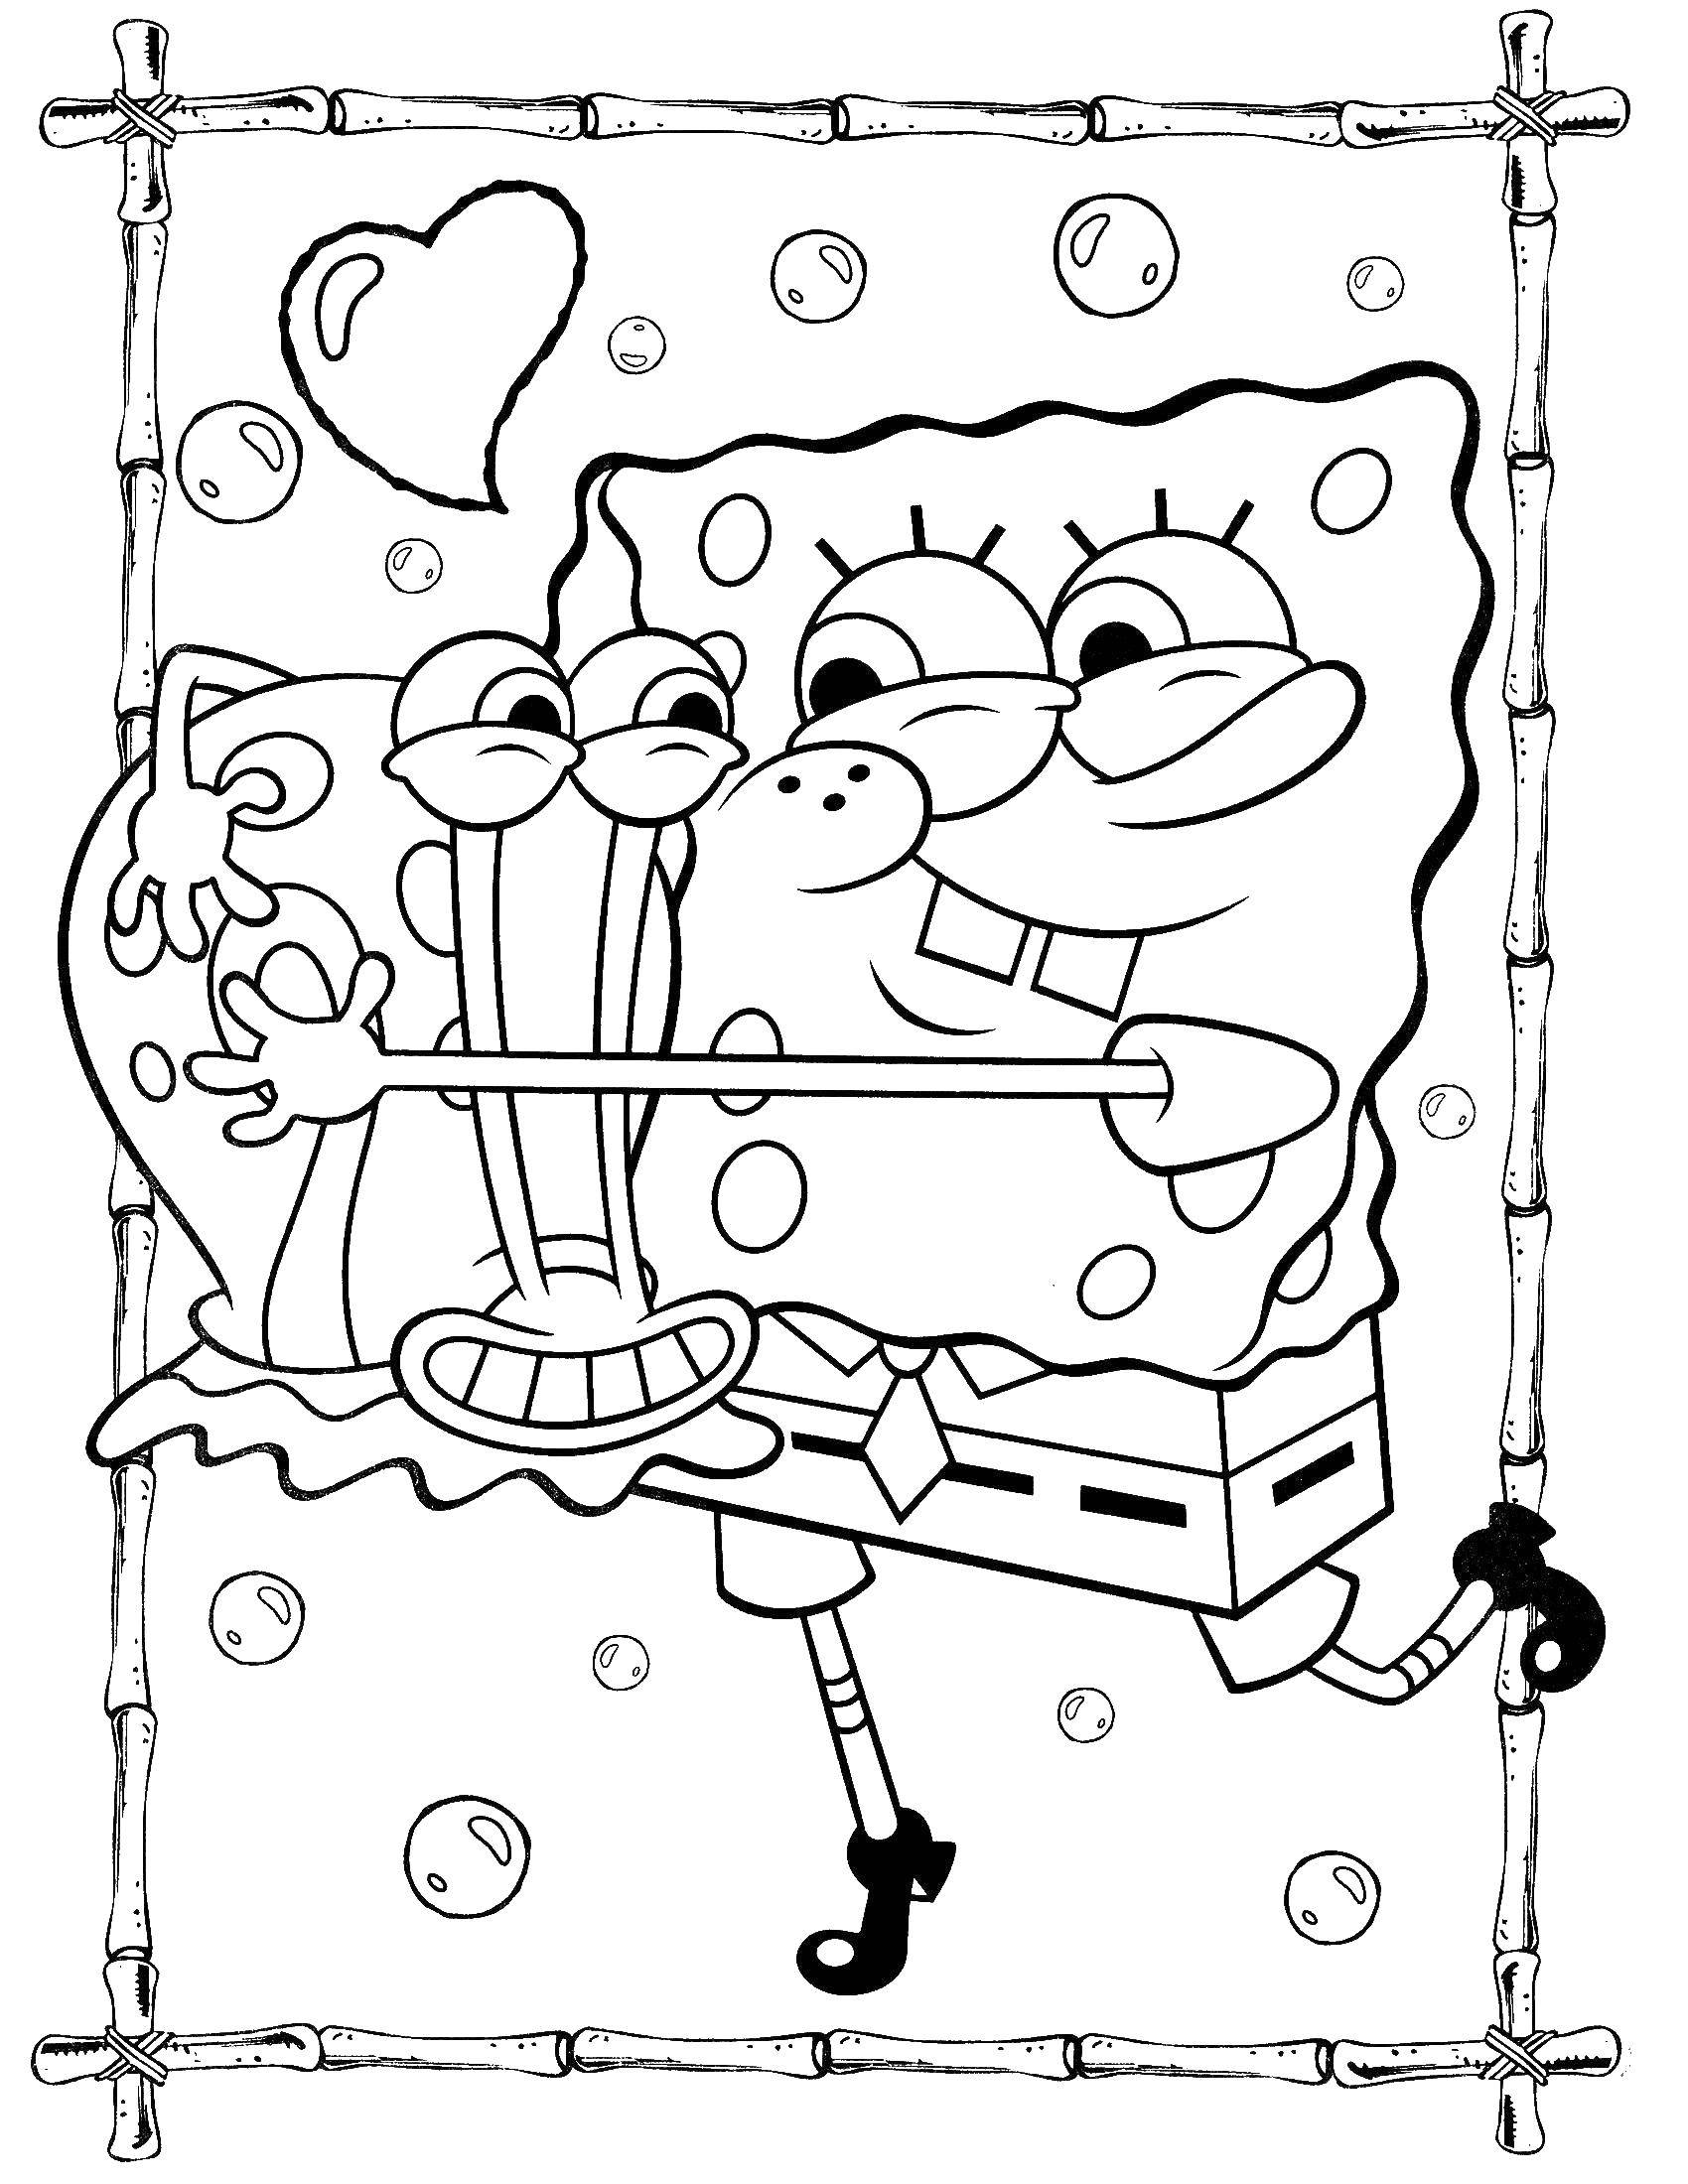 Coloring Spongebob and Gary. Category Spongebob. Tags:  spongebob, Patrick.